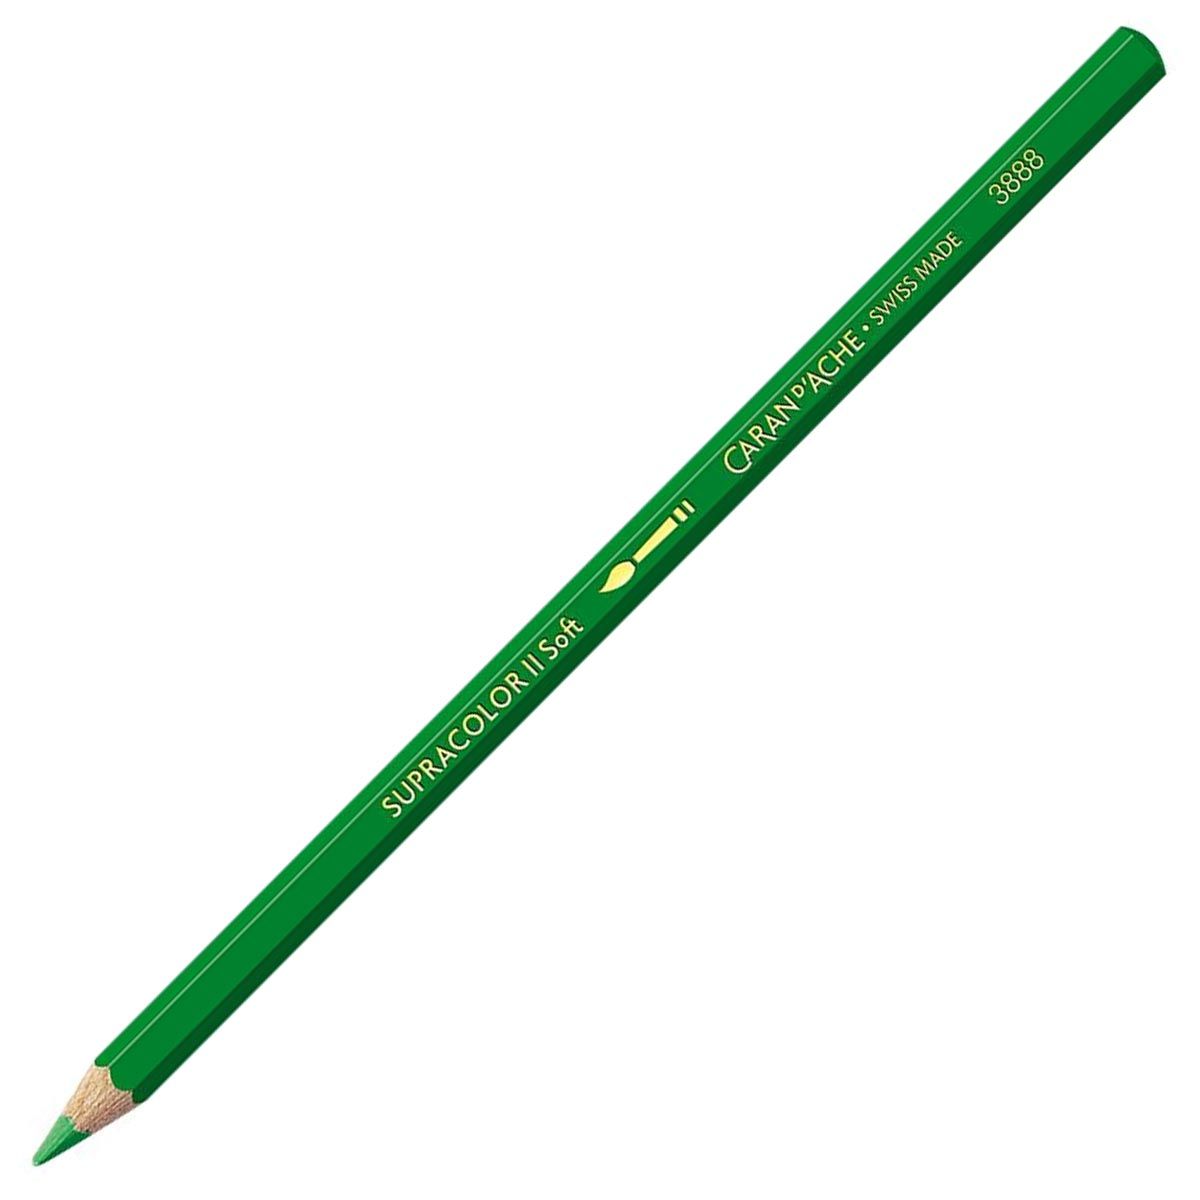 Caran d'Ache Supracolor ll Soft Aquarelle Pencil Grass Green 220